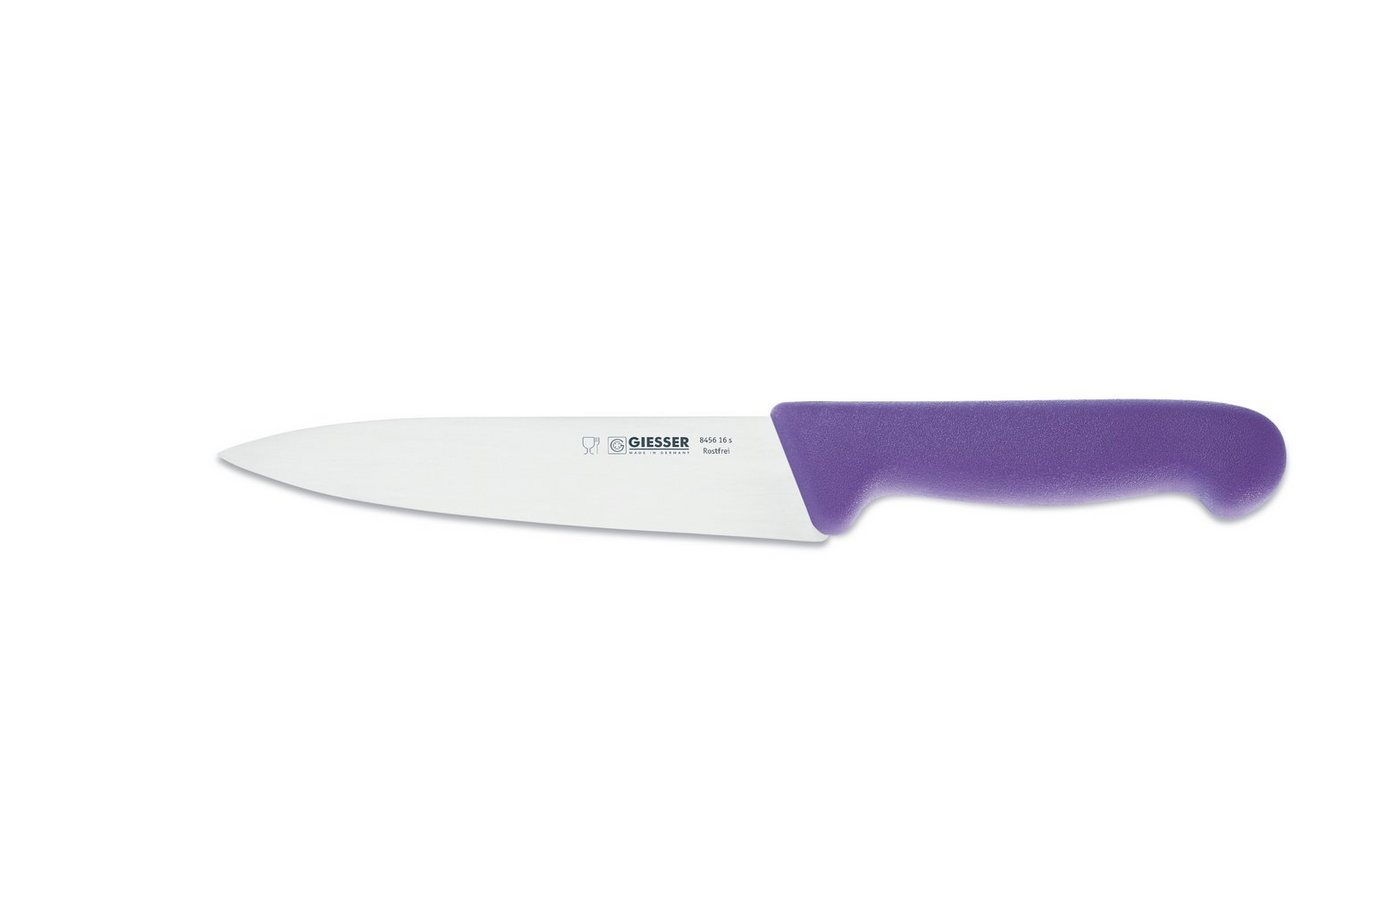 Giesser Messer Kochmesser Küchenmesser 8456, schmale, mittelspitze Klinge, scharf Handabzug, Ideal für jede Küche von Giesser Messer